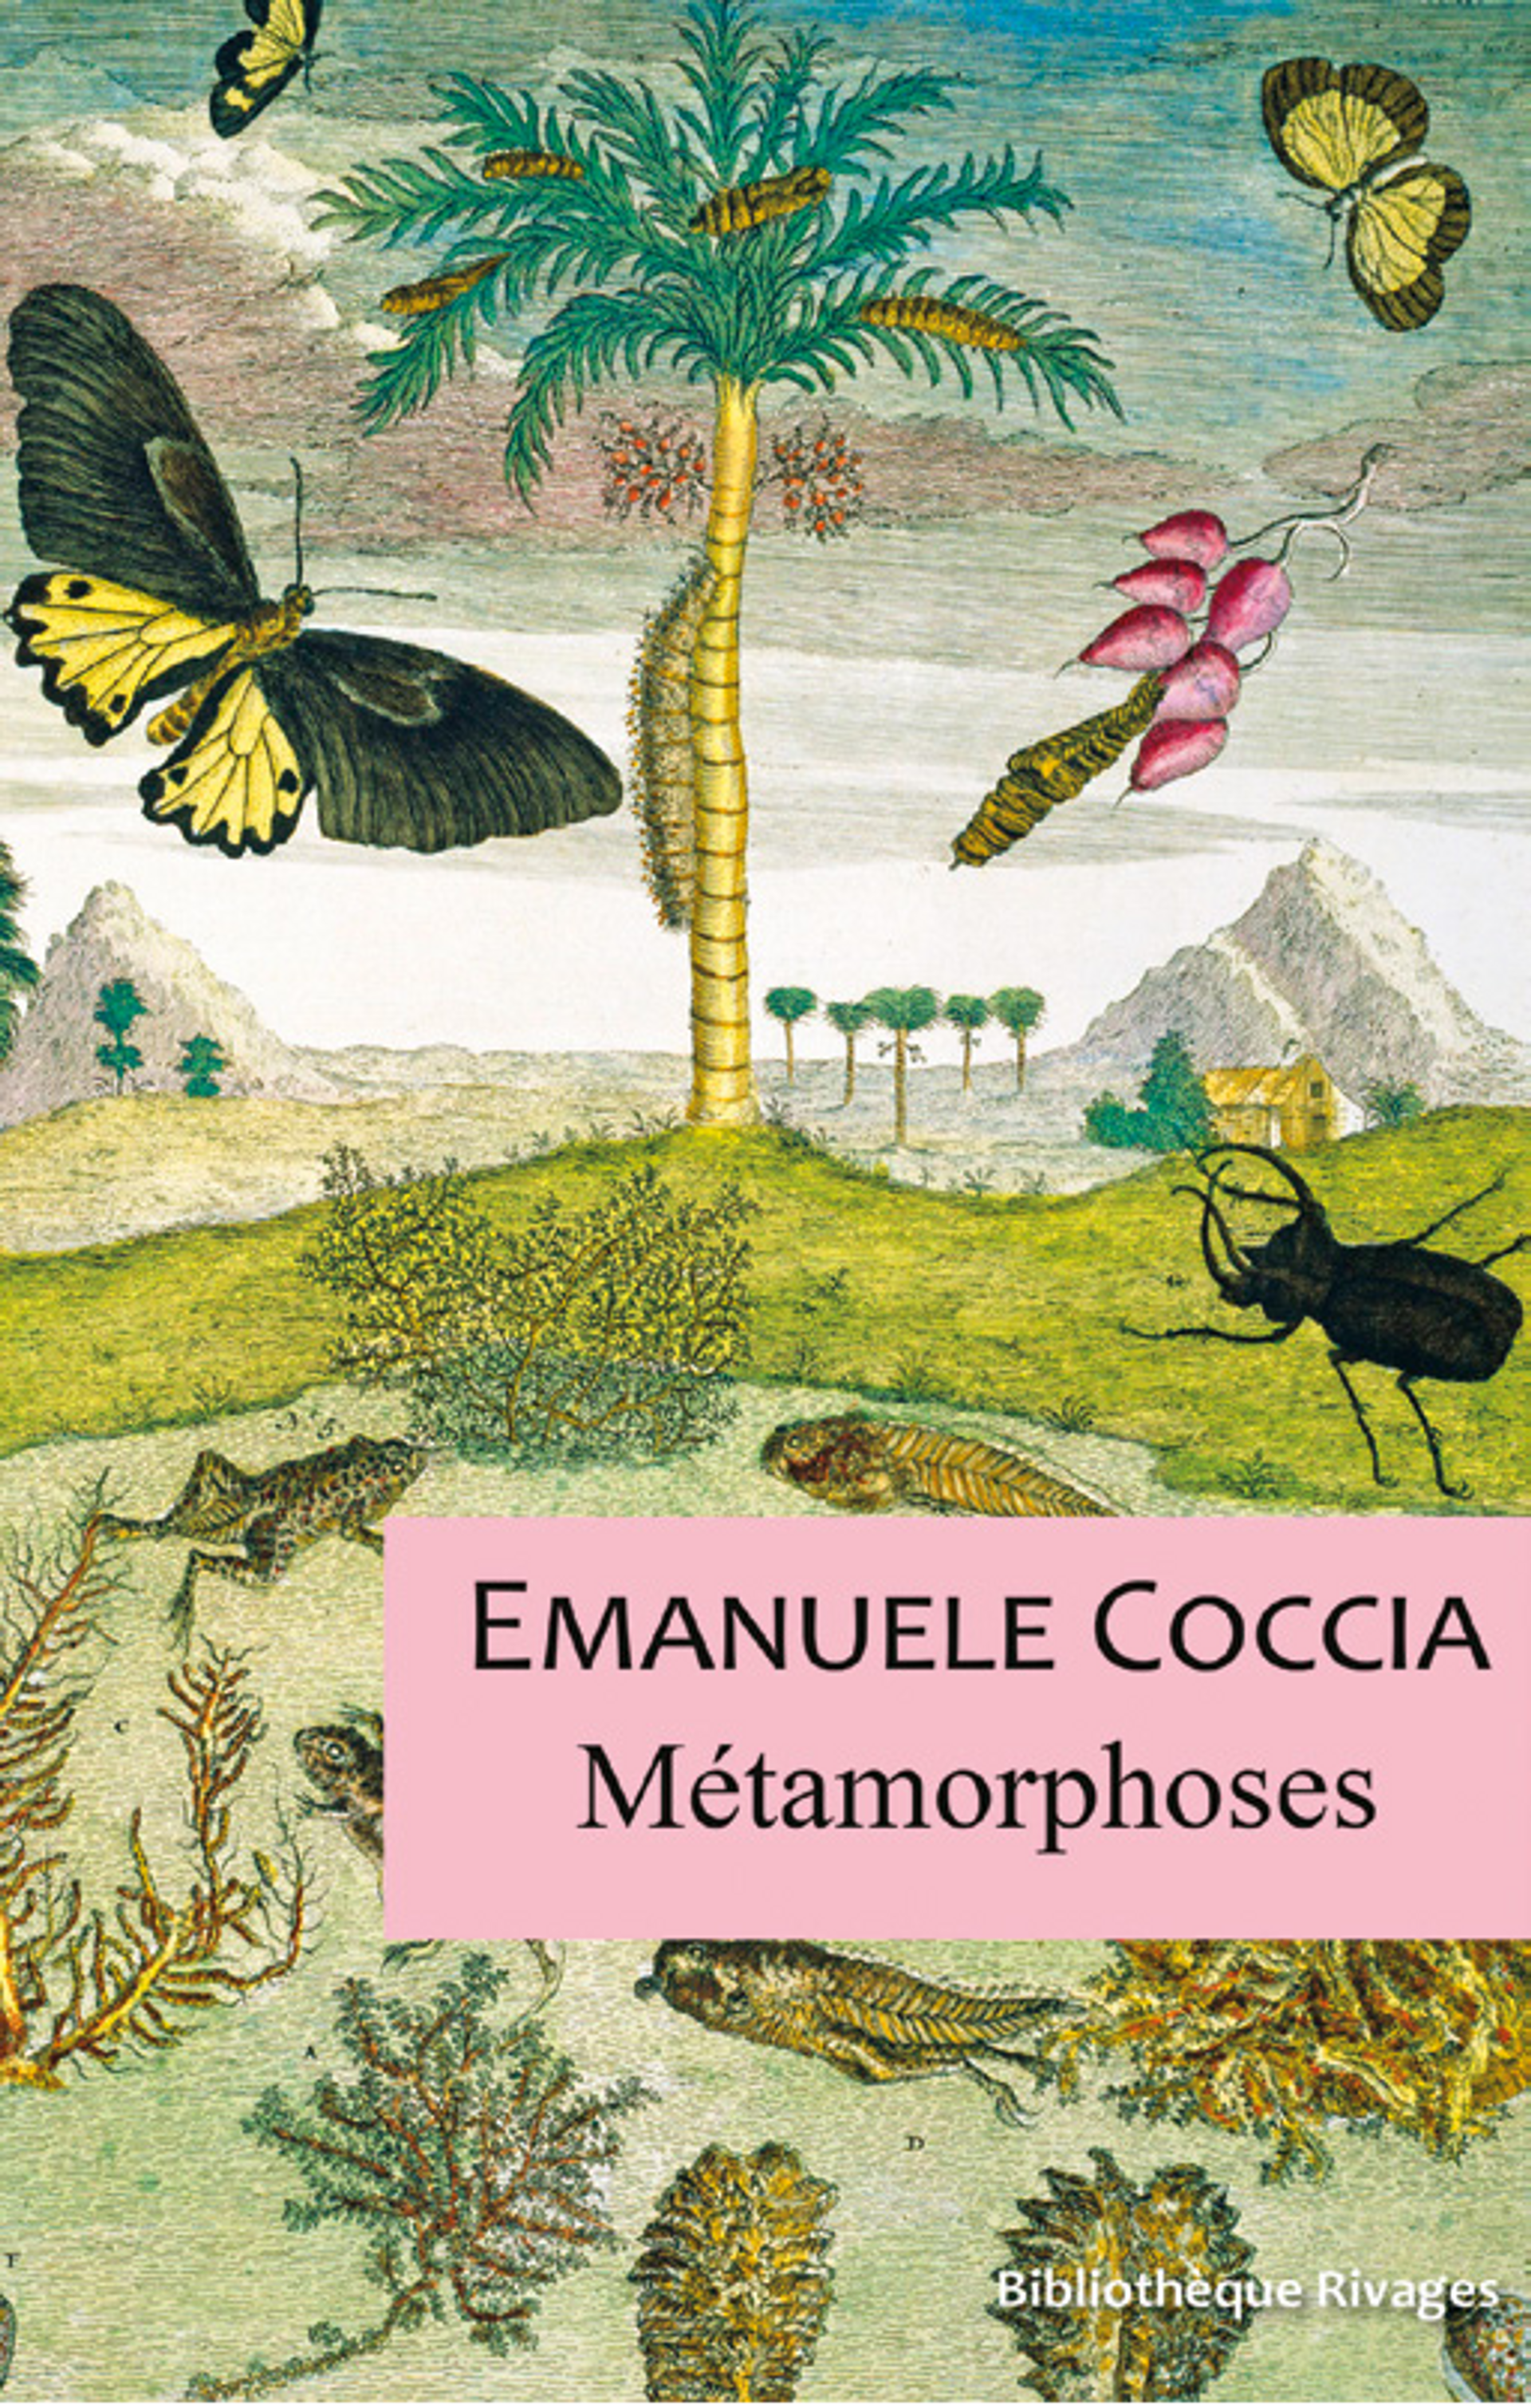 Emanuele Coccia, Métamorphoses, Paris, Bibliothèque Rivages, 2020, 240 pages, 18 euros. 